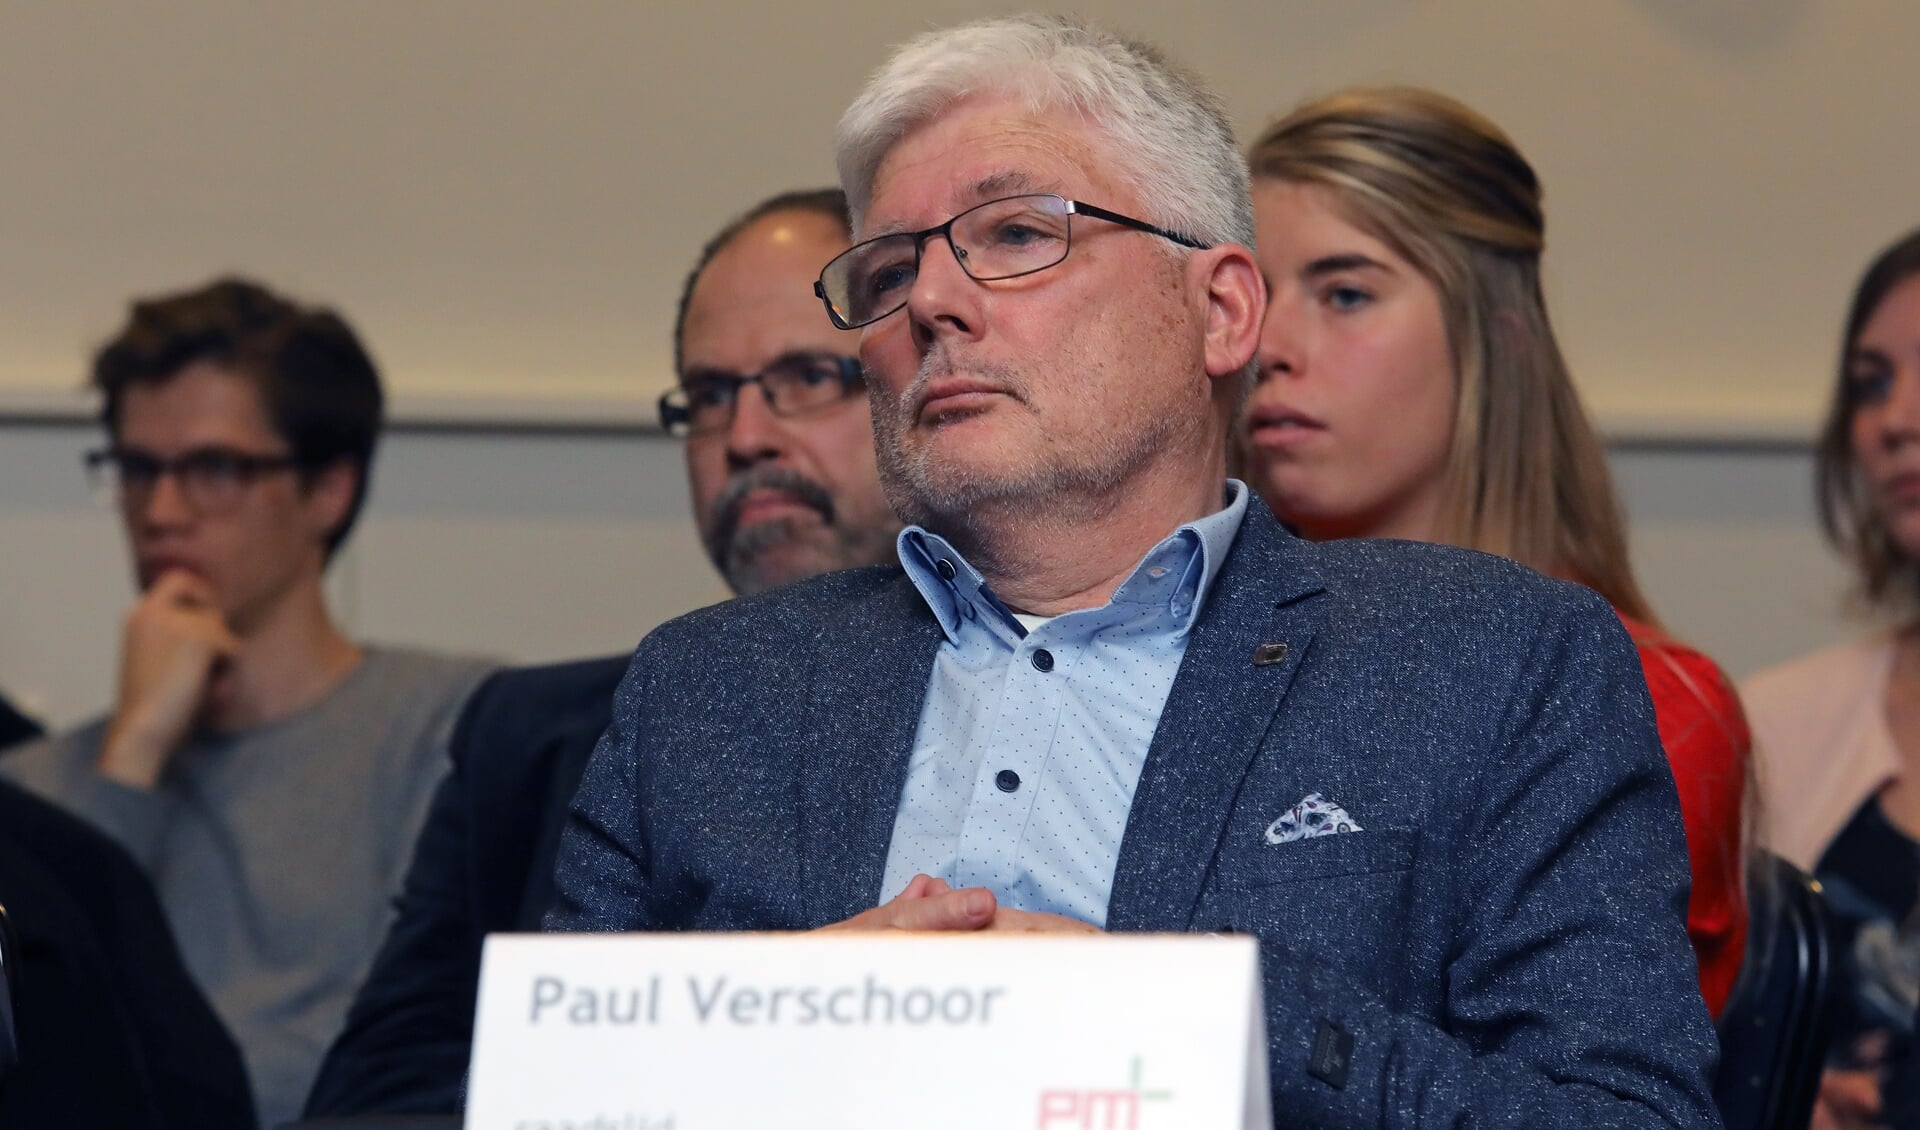 • Raadslid Paul Verschoor is er niet gerust op dat er geen bedrijfsmatige activiteiten gaan plaatsvinden op het adres.